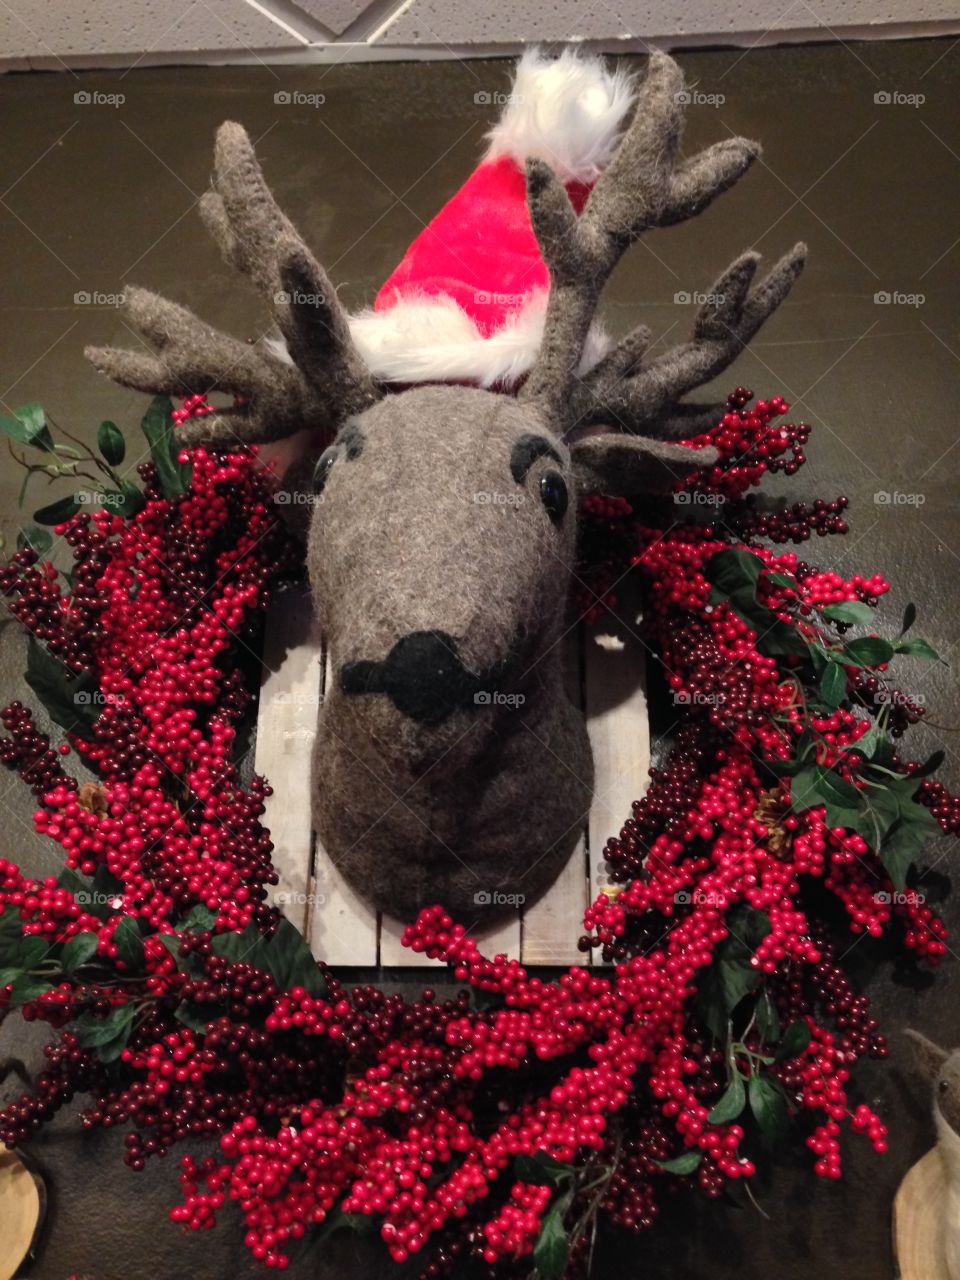 Santa's Reindeer 

Published by:
HappyBrownMonkey 